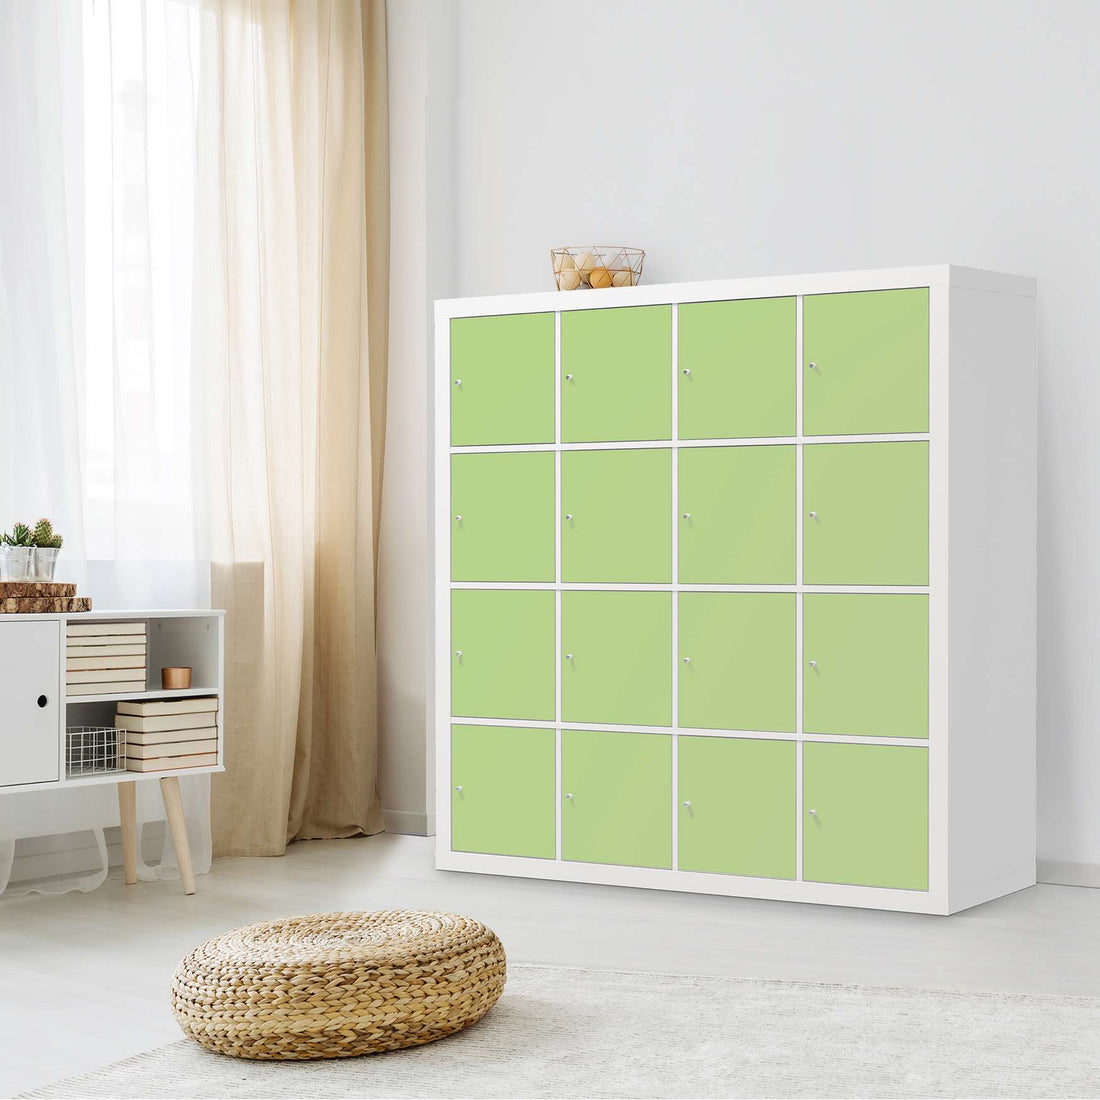 Möbelfolie Hellgrün Light - IKEA Kallax Regal 16 Türen - Wohnzimmer